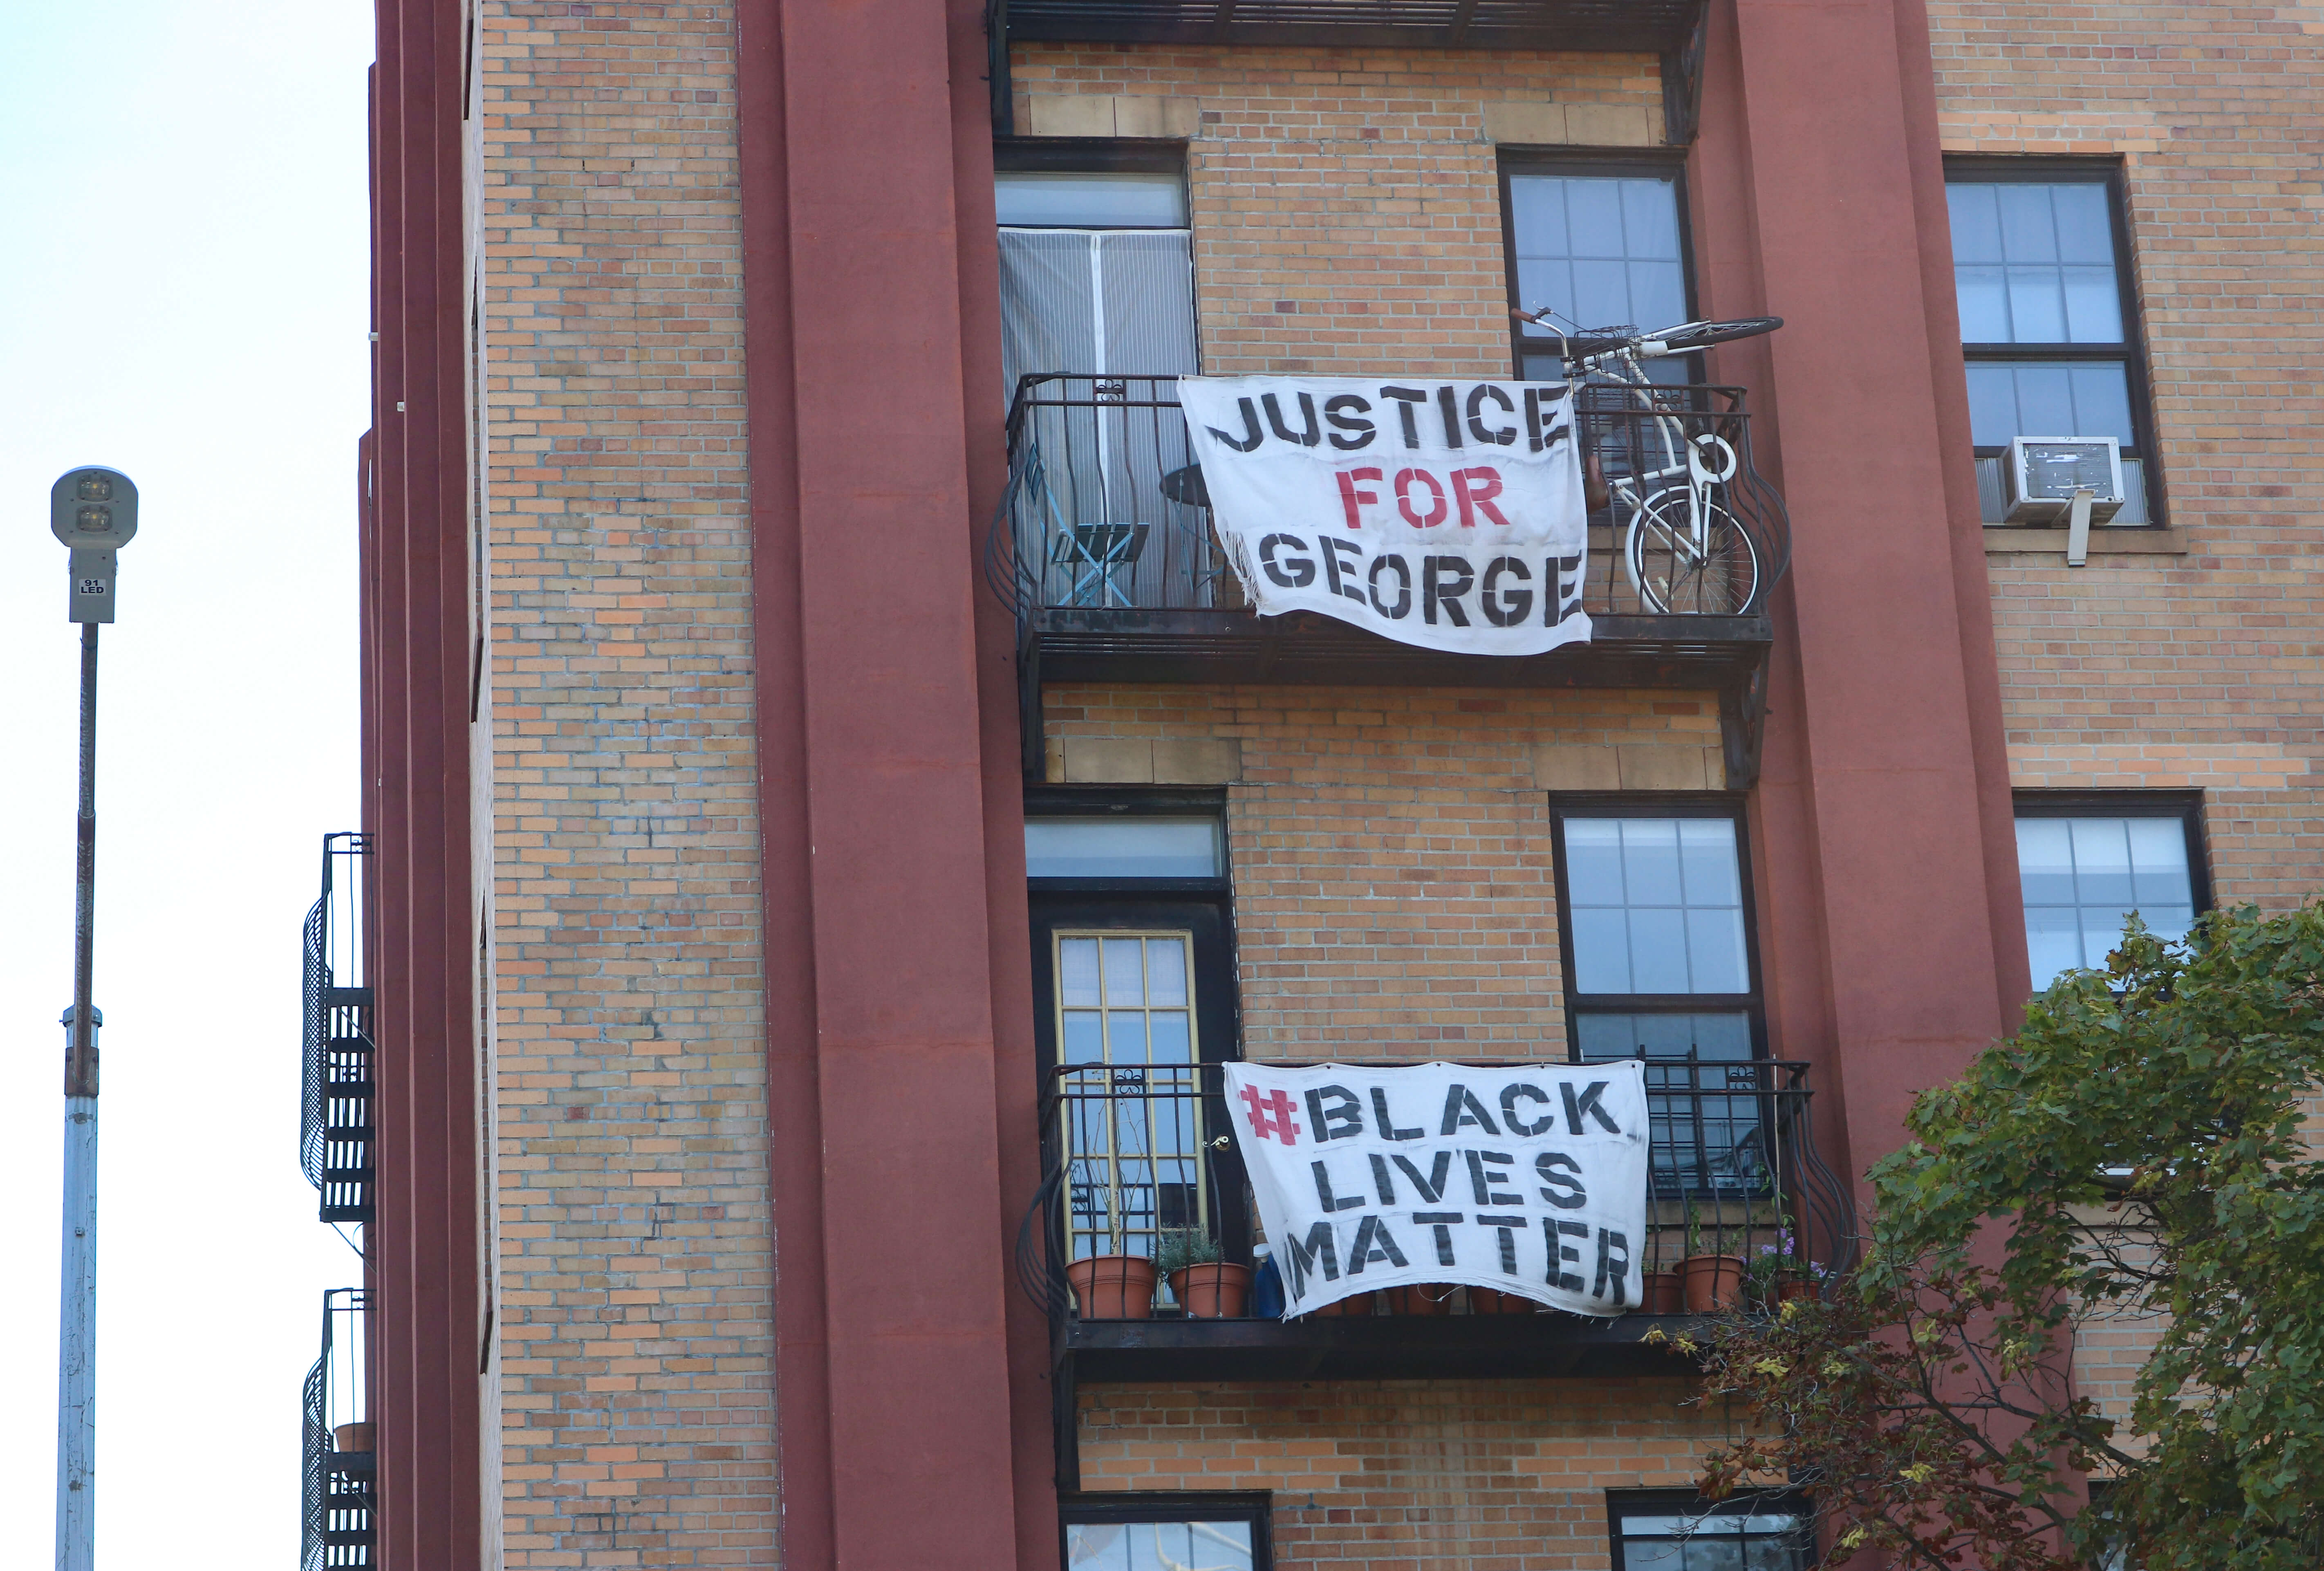 black lives matter signage